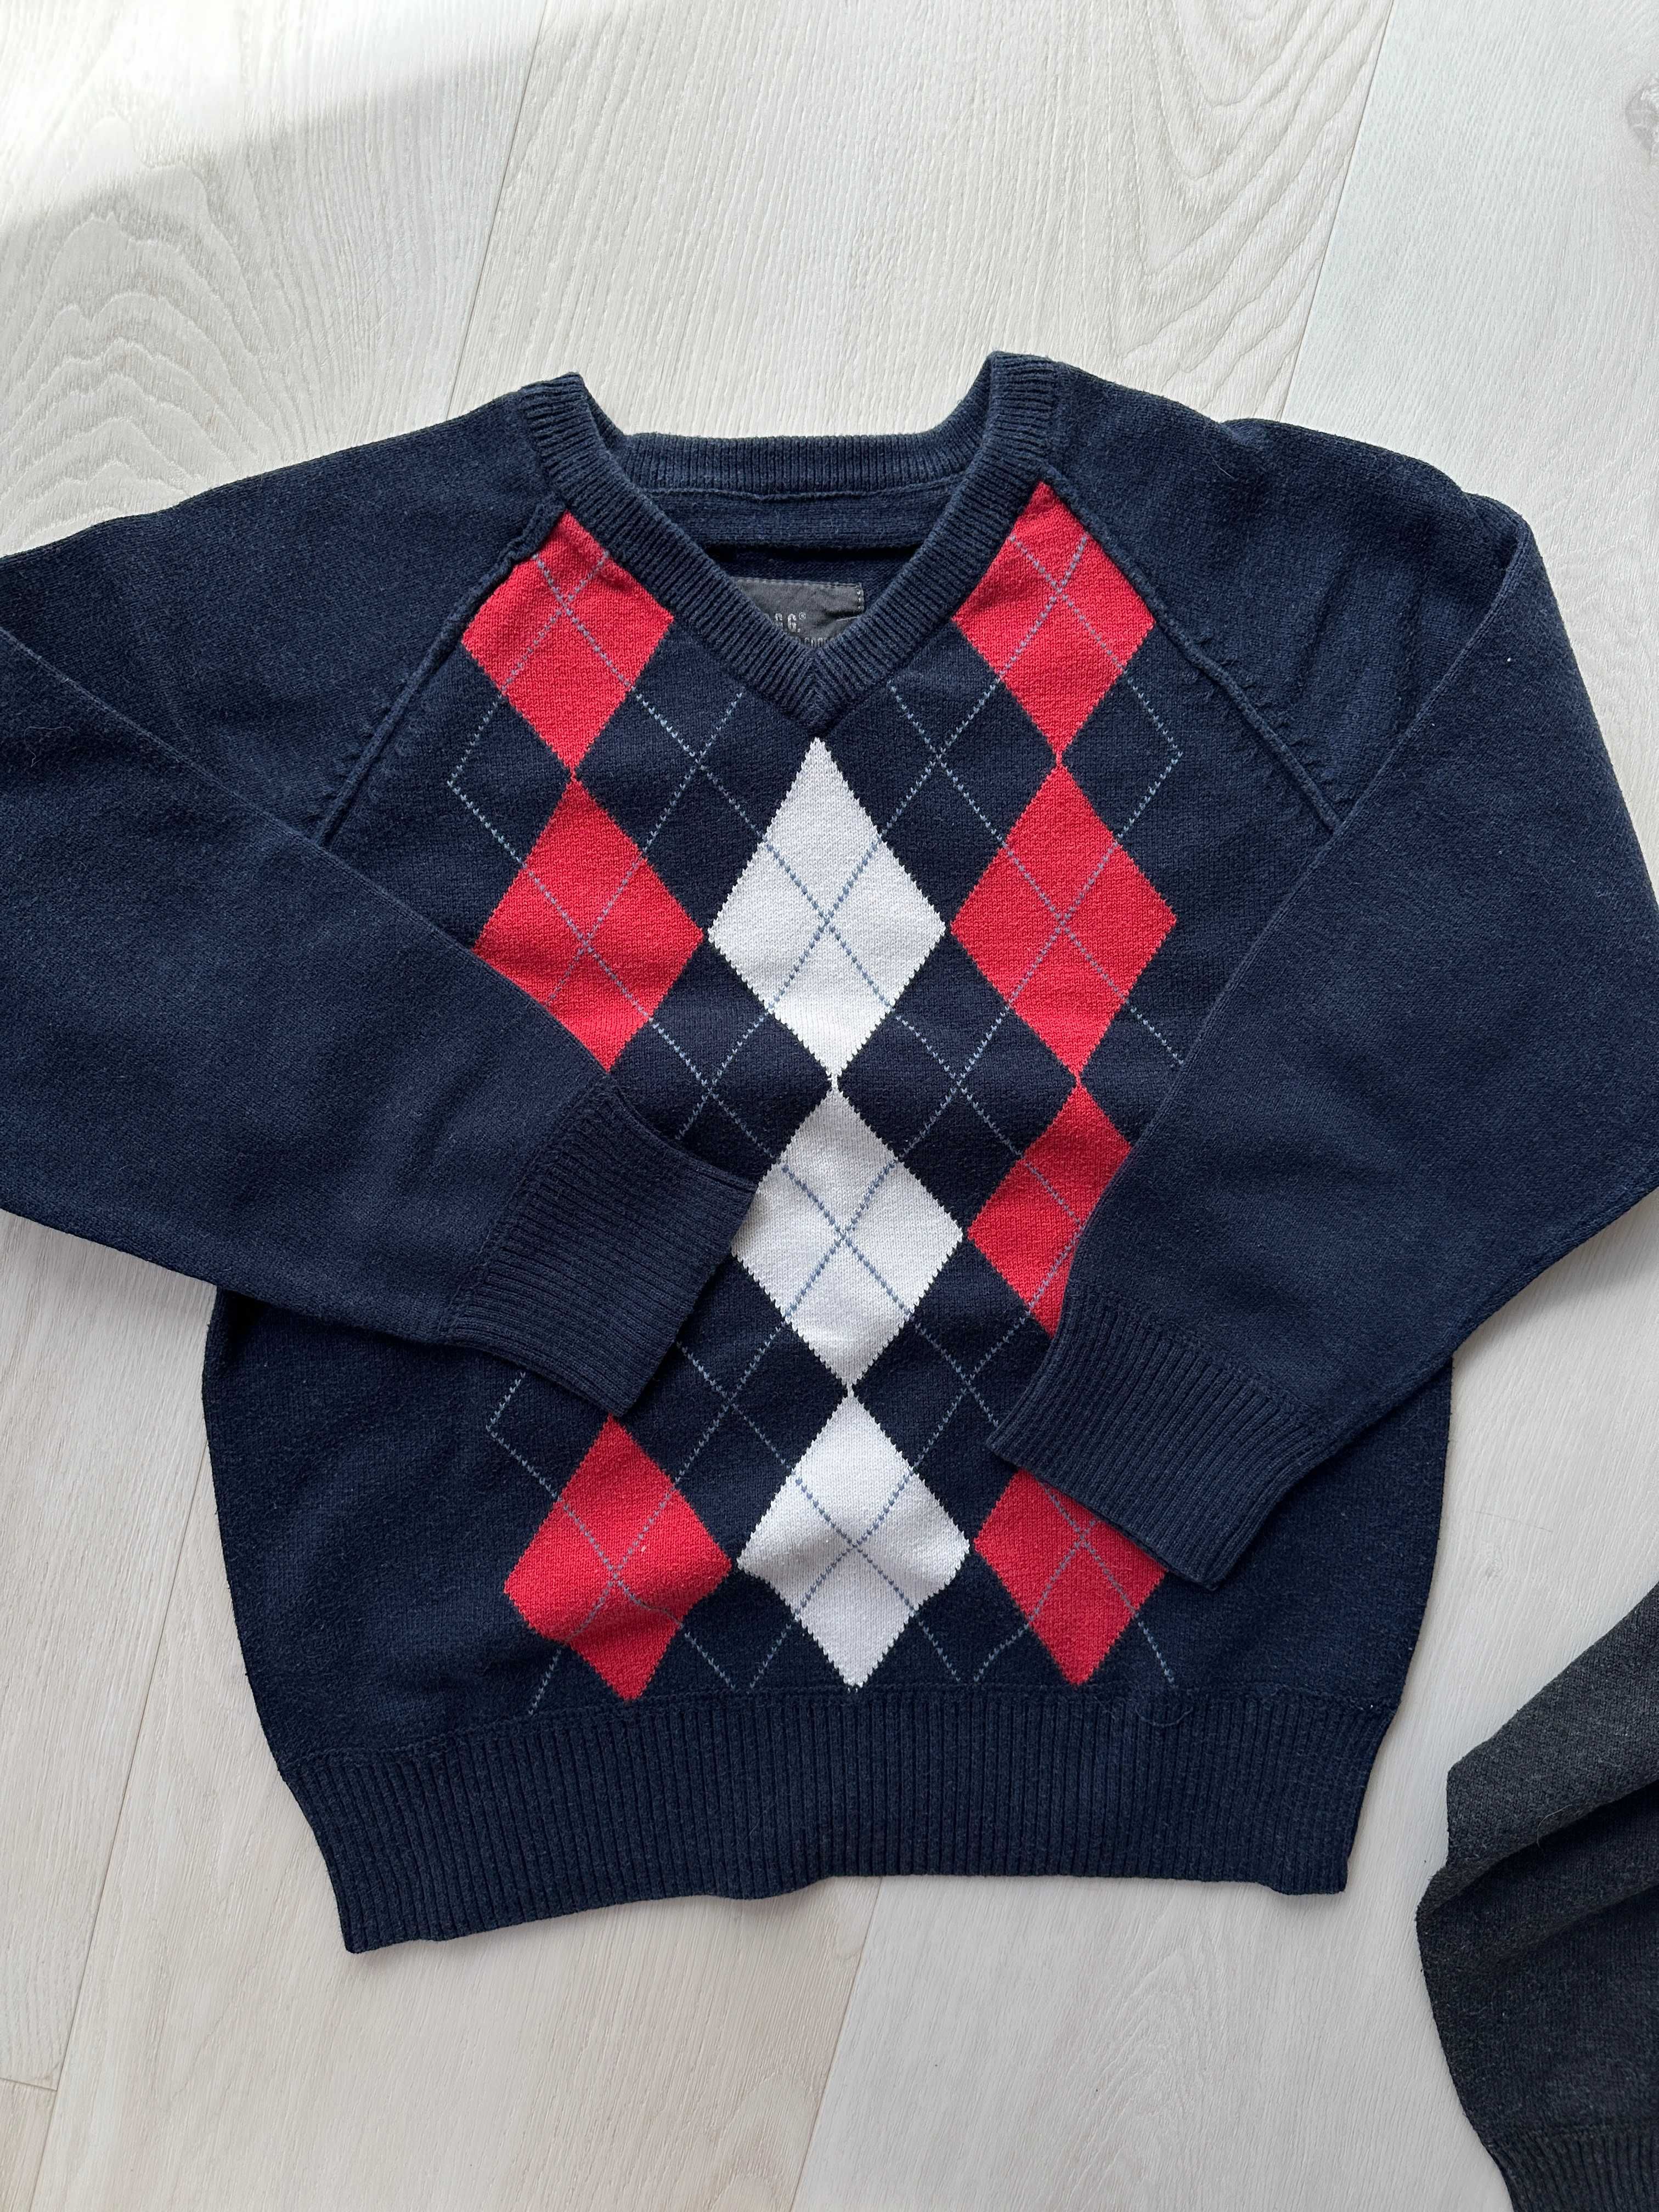 zestaw 5 szt dla chłopca 122/128 koszule i sweterki H&M i ZARA